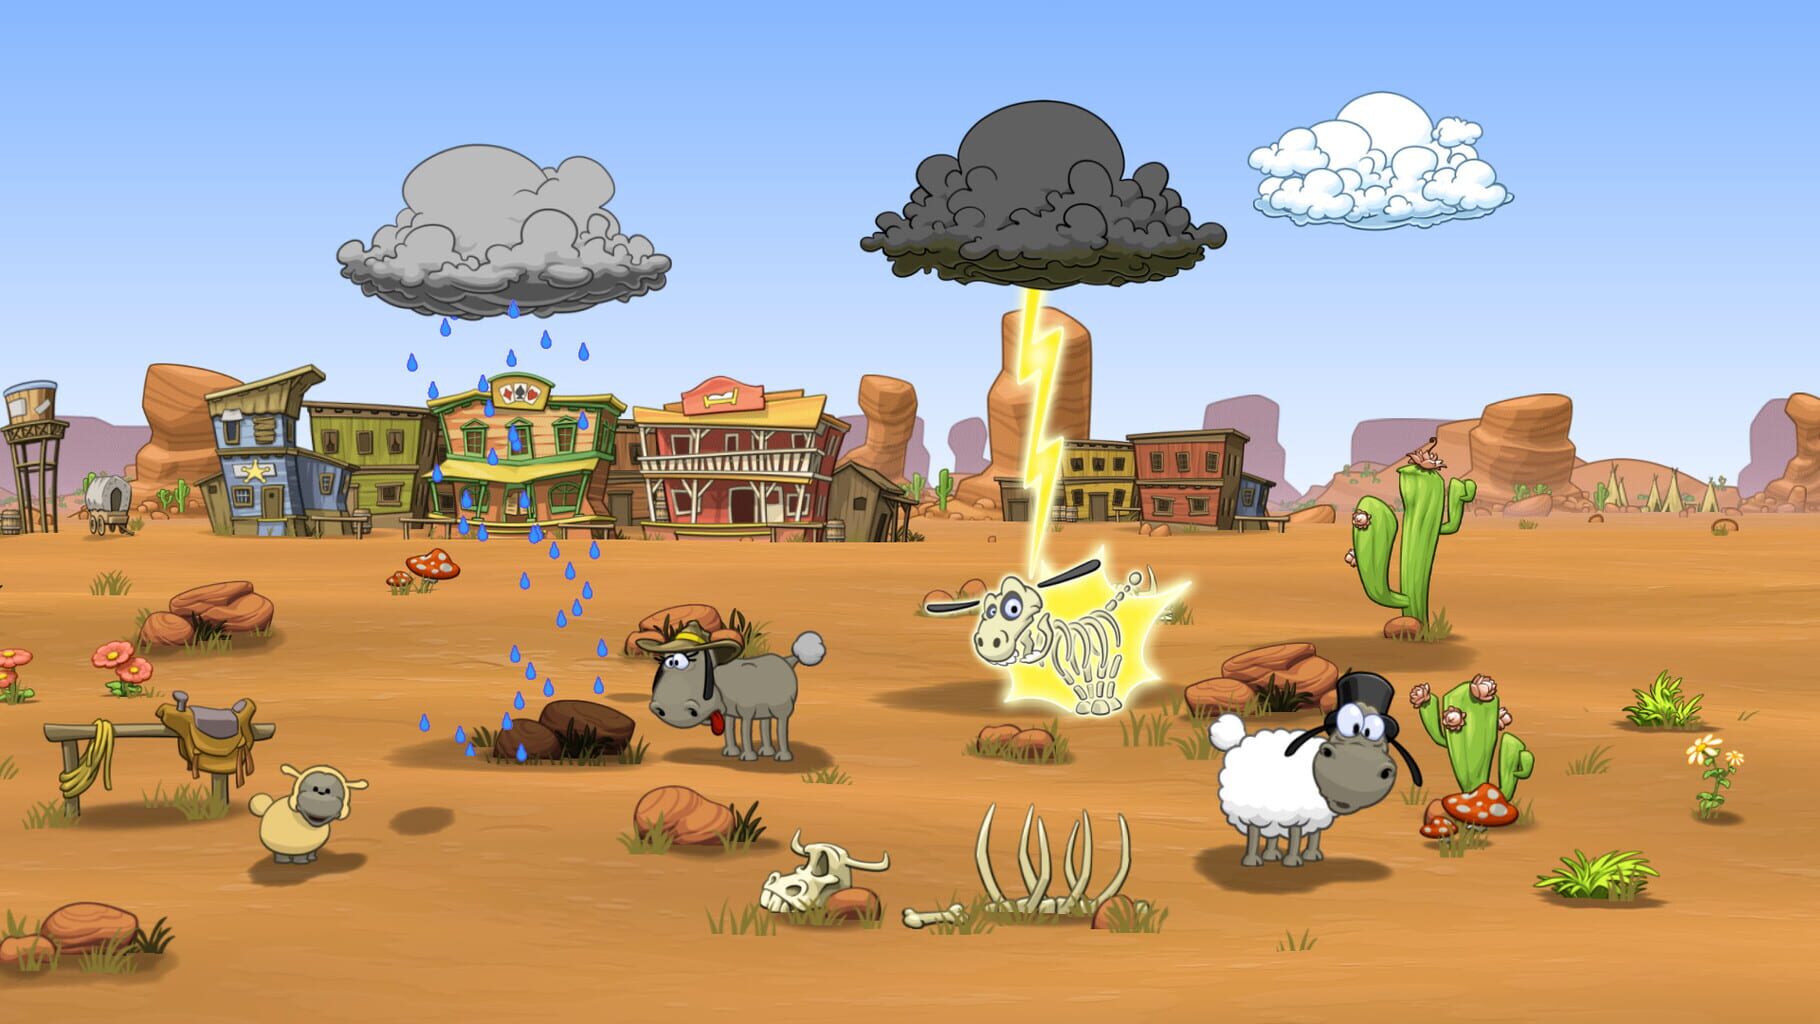 Clouds & Sheep 2 screenshots